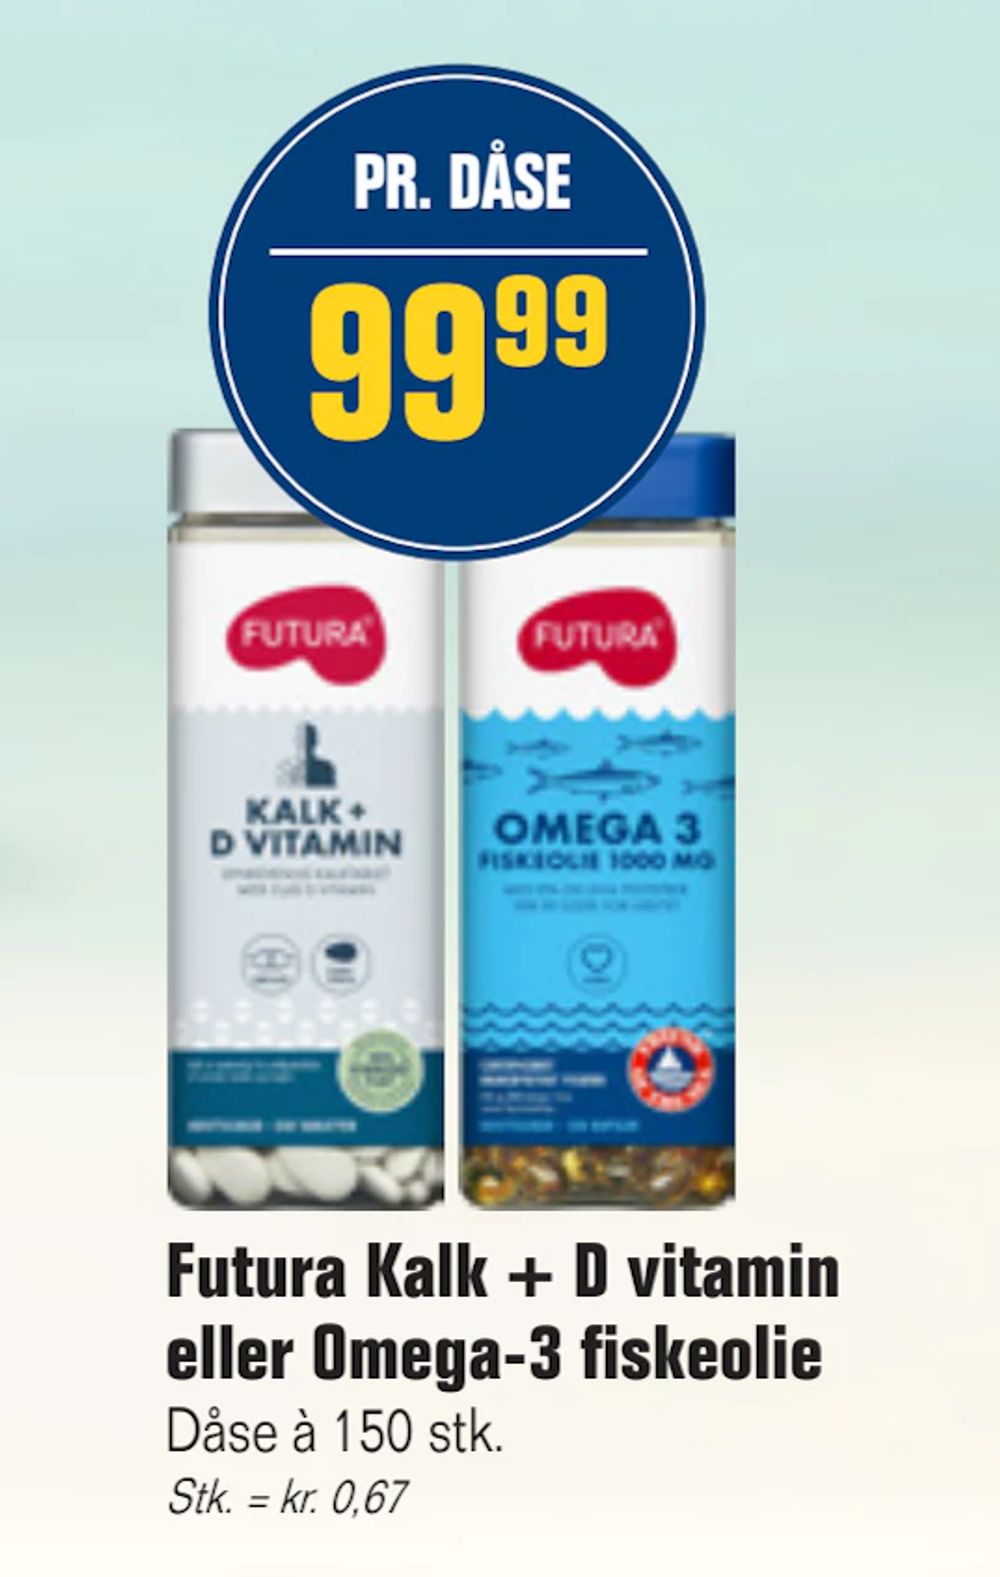 Tilbud på Futura Kalk + D vitamin eller Omega-3 fiskeolie fra Otto Duborg til 99,99 kr.